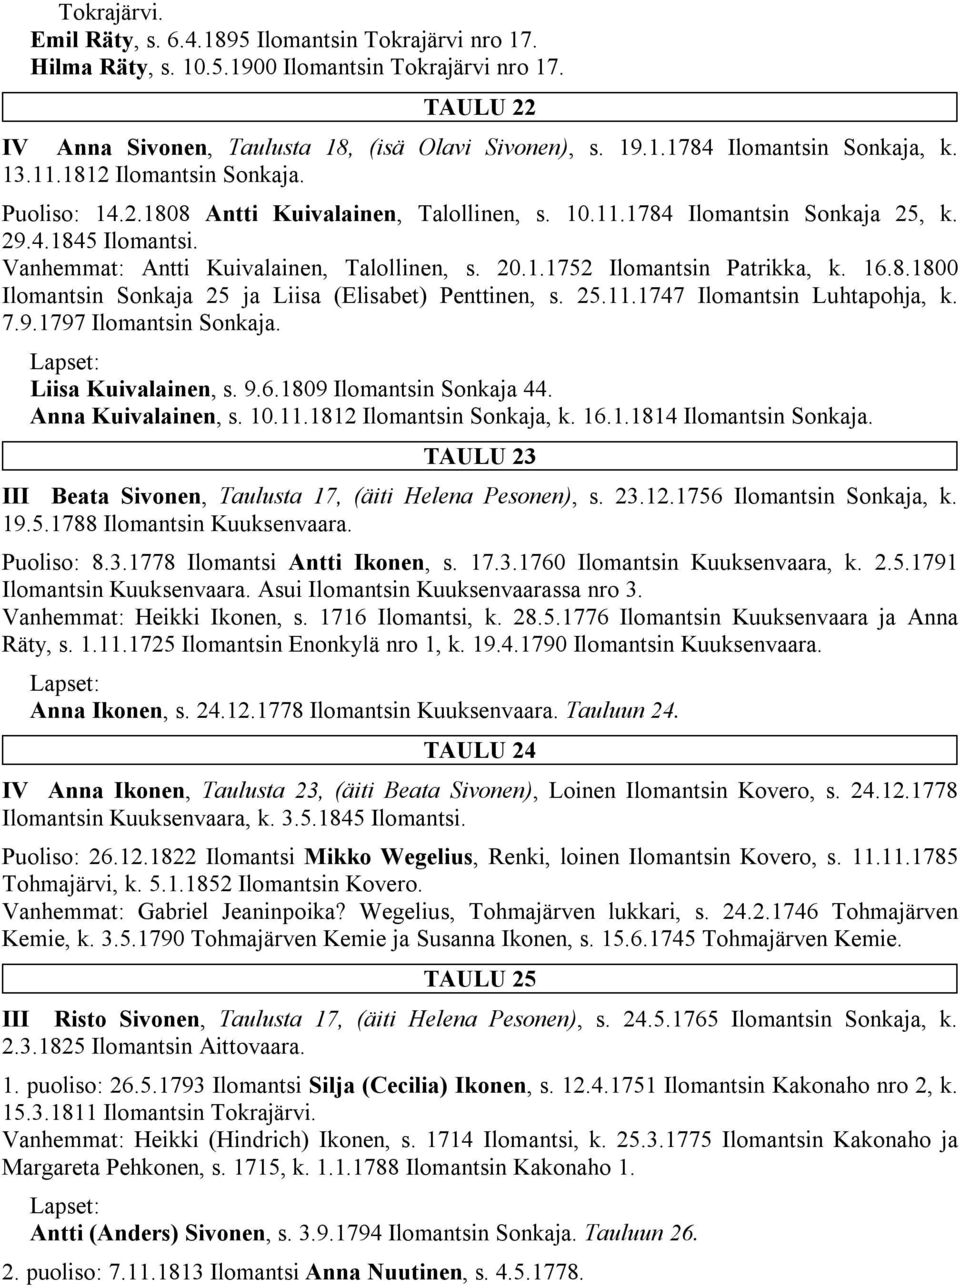 16.8.1800 Ilomantsin Sonkaja 25 ja Liisa (Elisabet) Penttinen, s. 25.11.1747 Ilomantsin Luhtapohja, k. 7.9.1797 Ilomantsin Sonkaja. Liisa Kuivalainen, s. 9.6.1809 Ilomantsin Sonkaja 44.